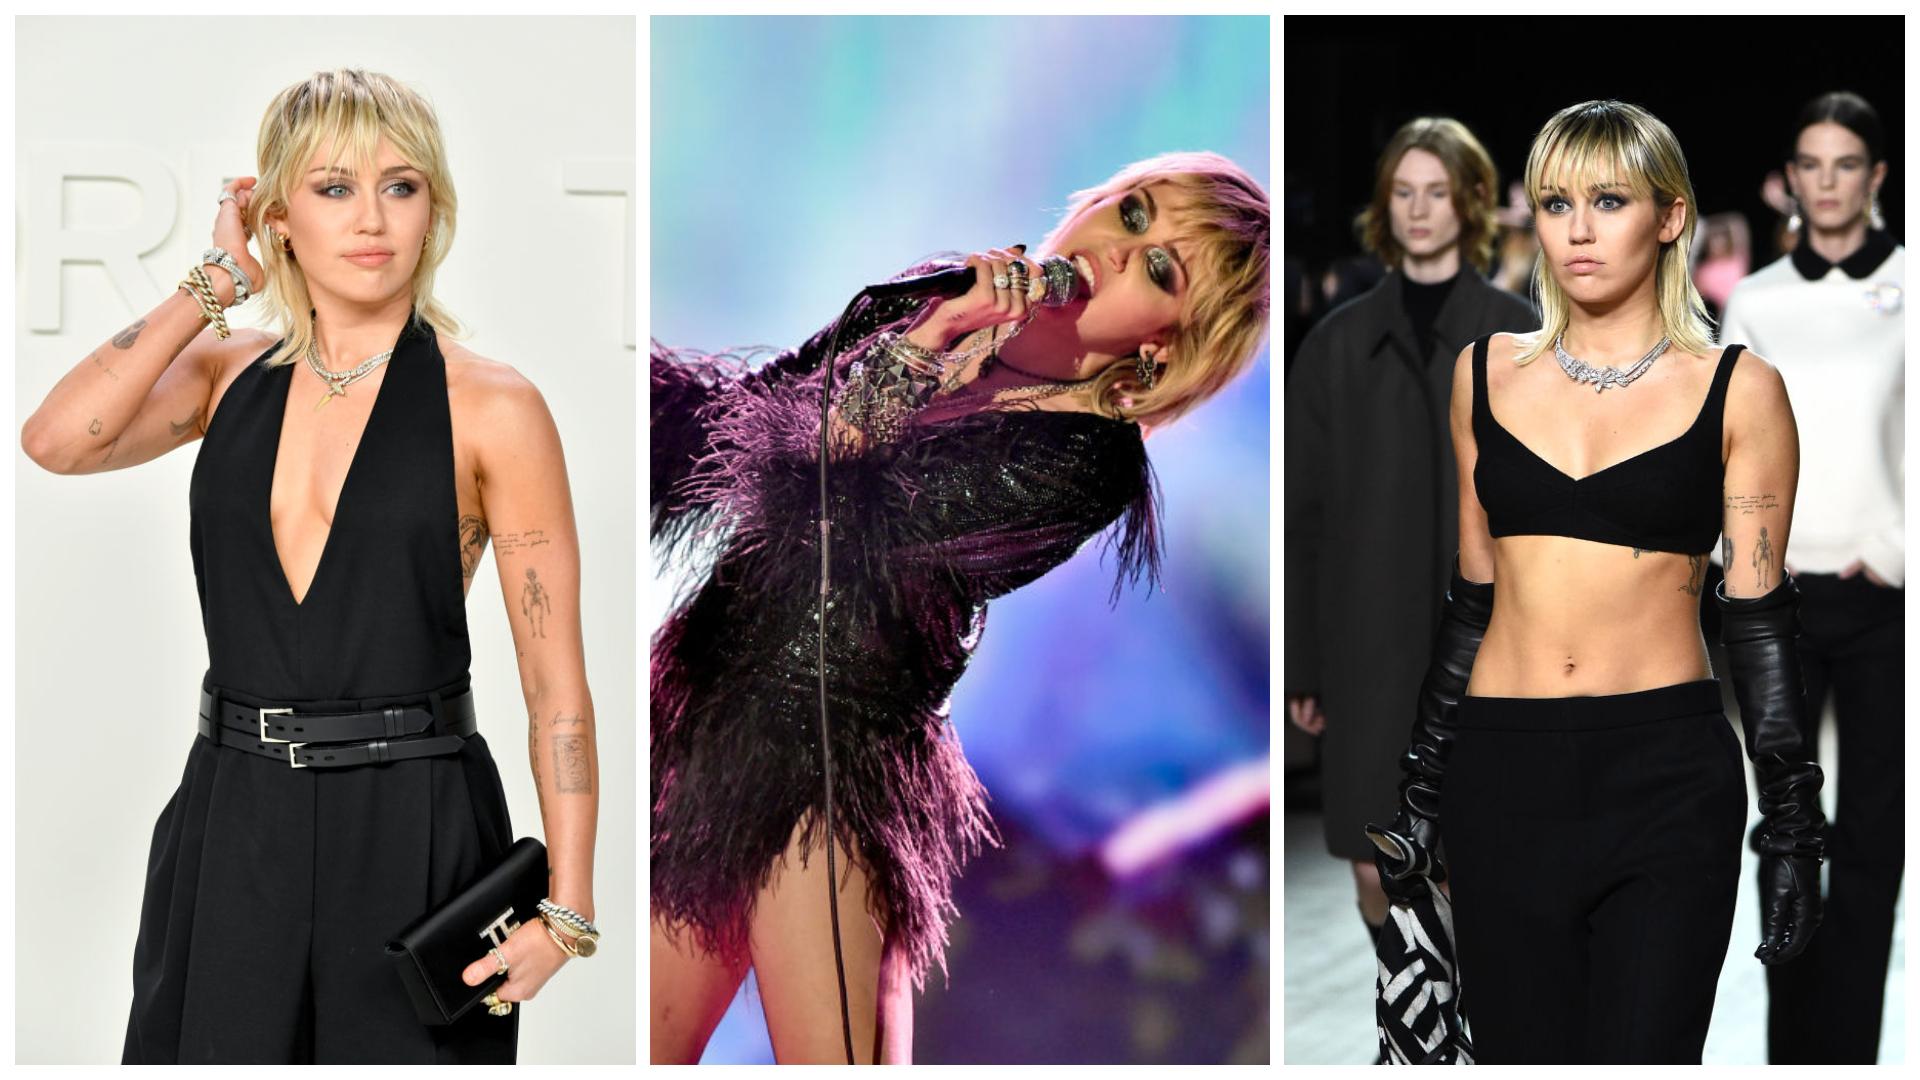 Colaj cu Miley Cyrus, purtând trei ținute negre, care îi scot în evidență formele și silueta